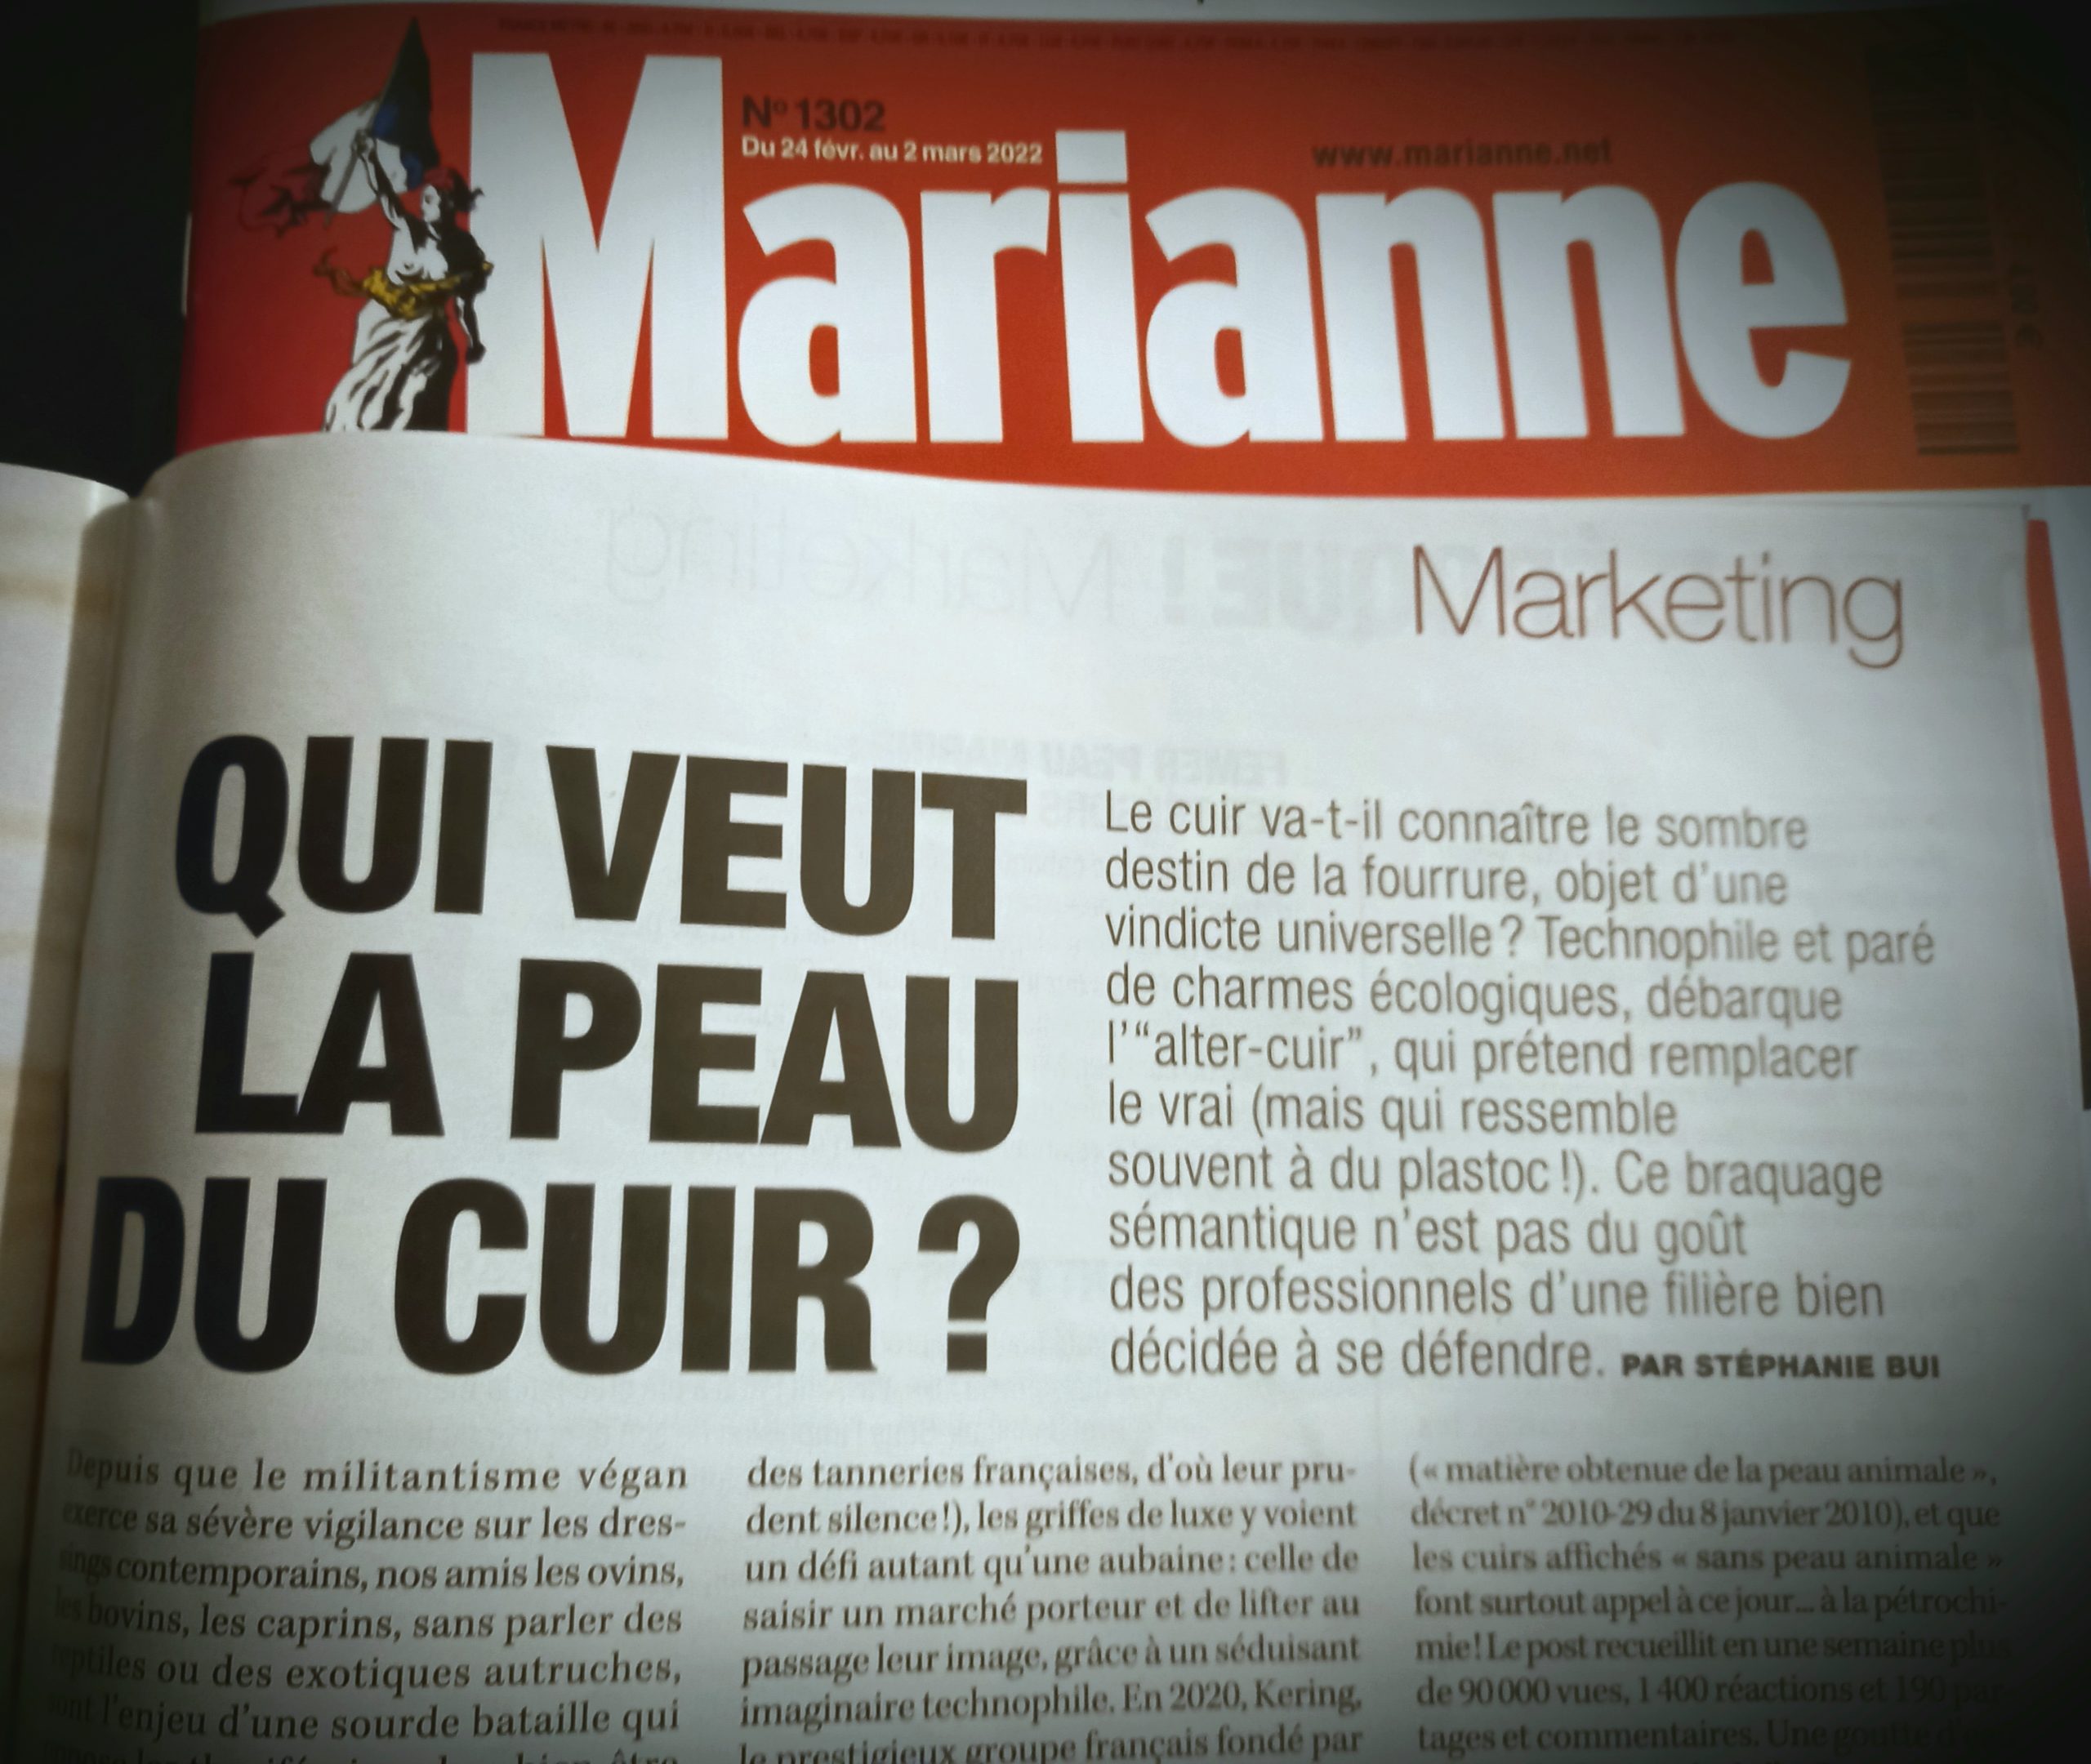 enquête sur le cuir de Stéphanie Bui, dans Marianne 2022